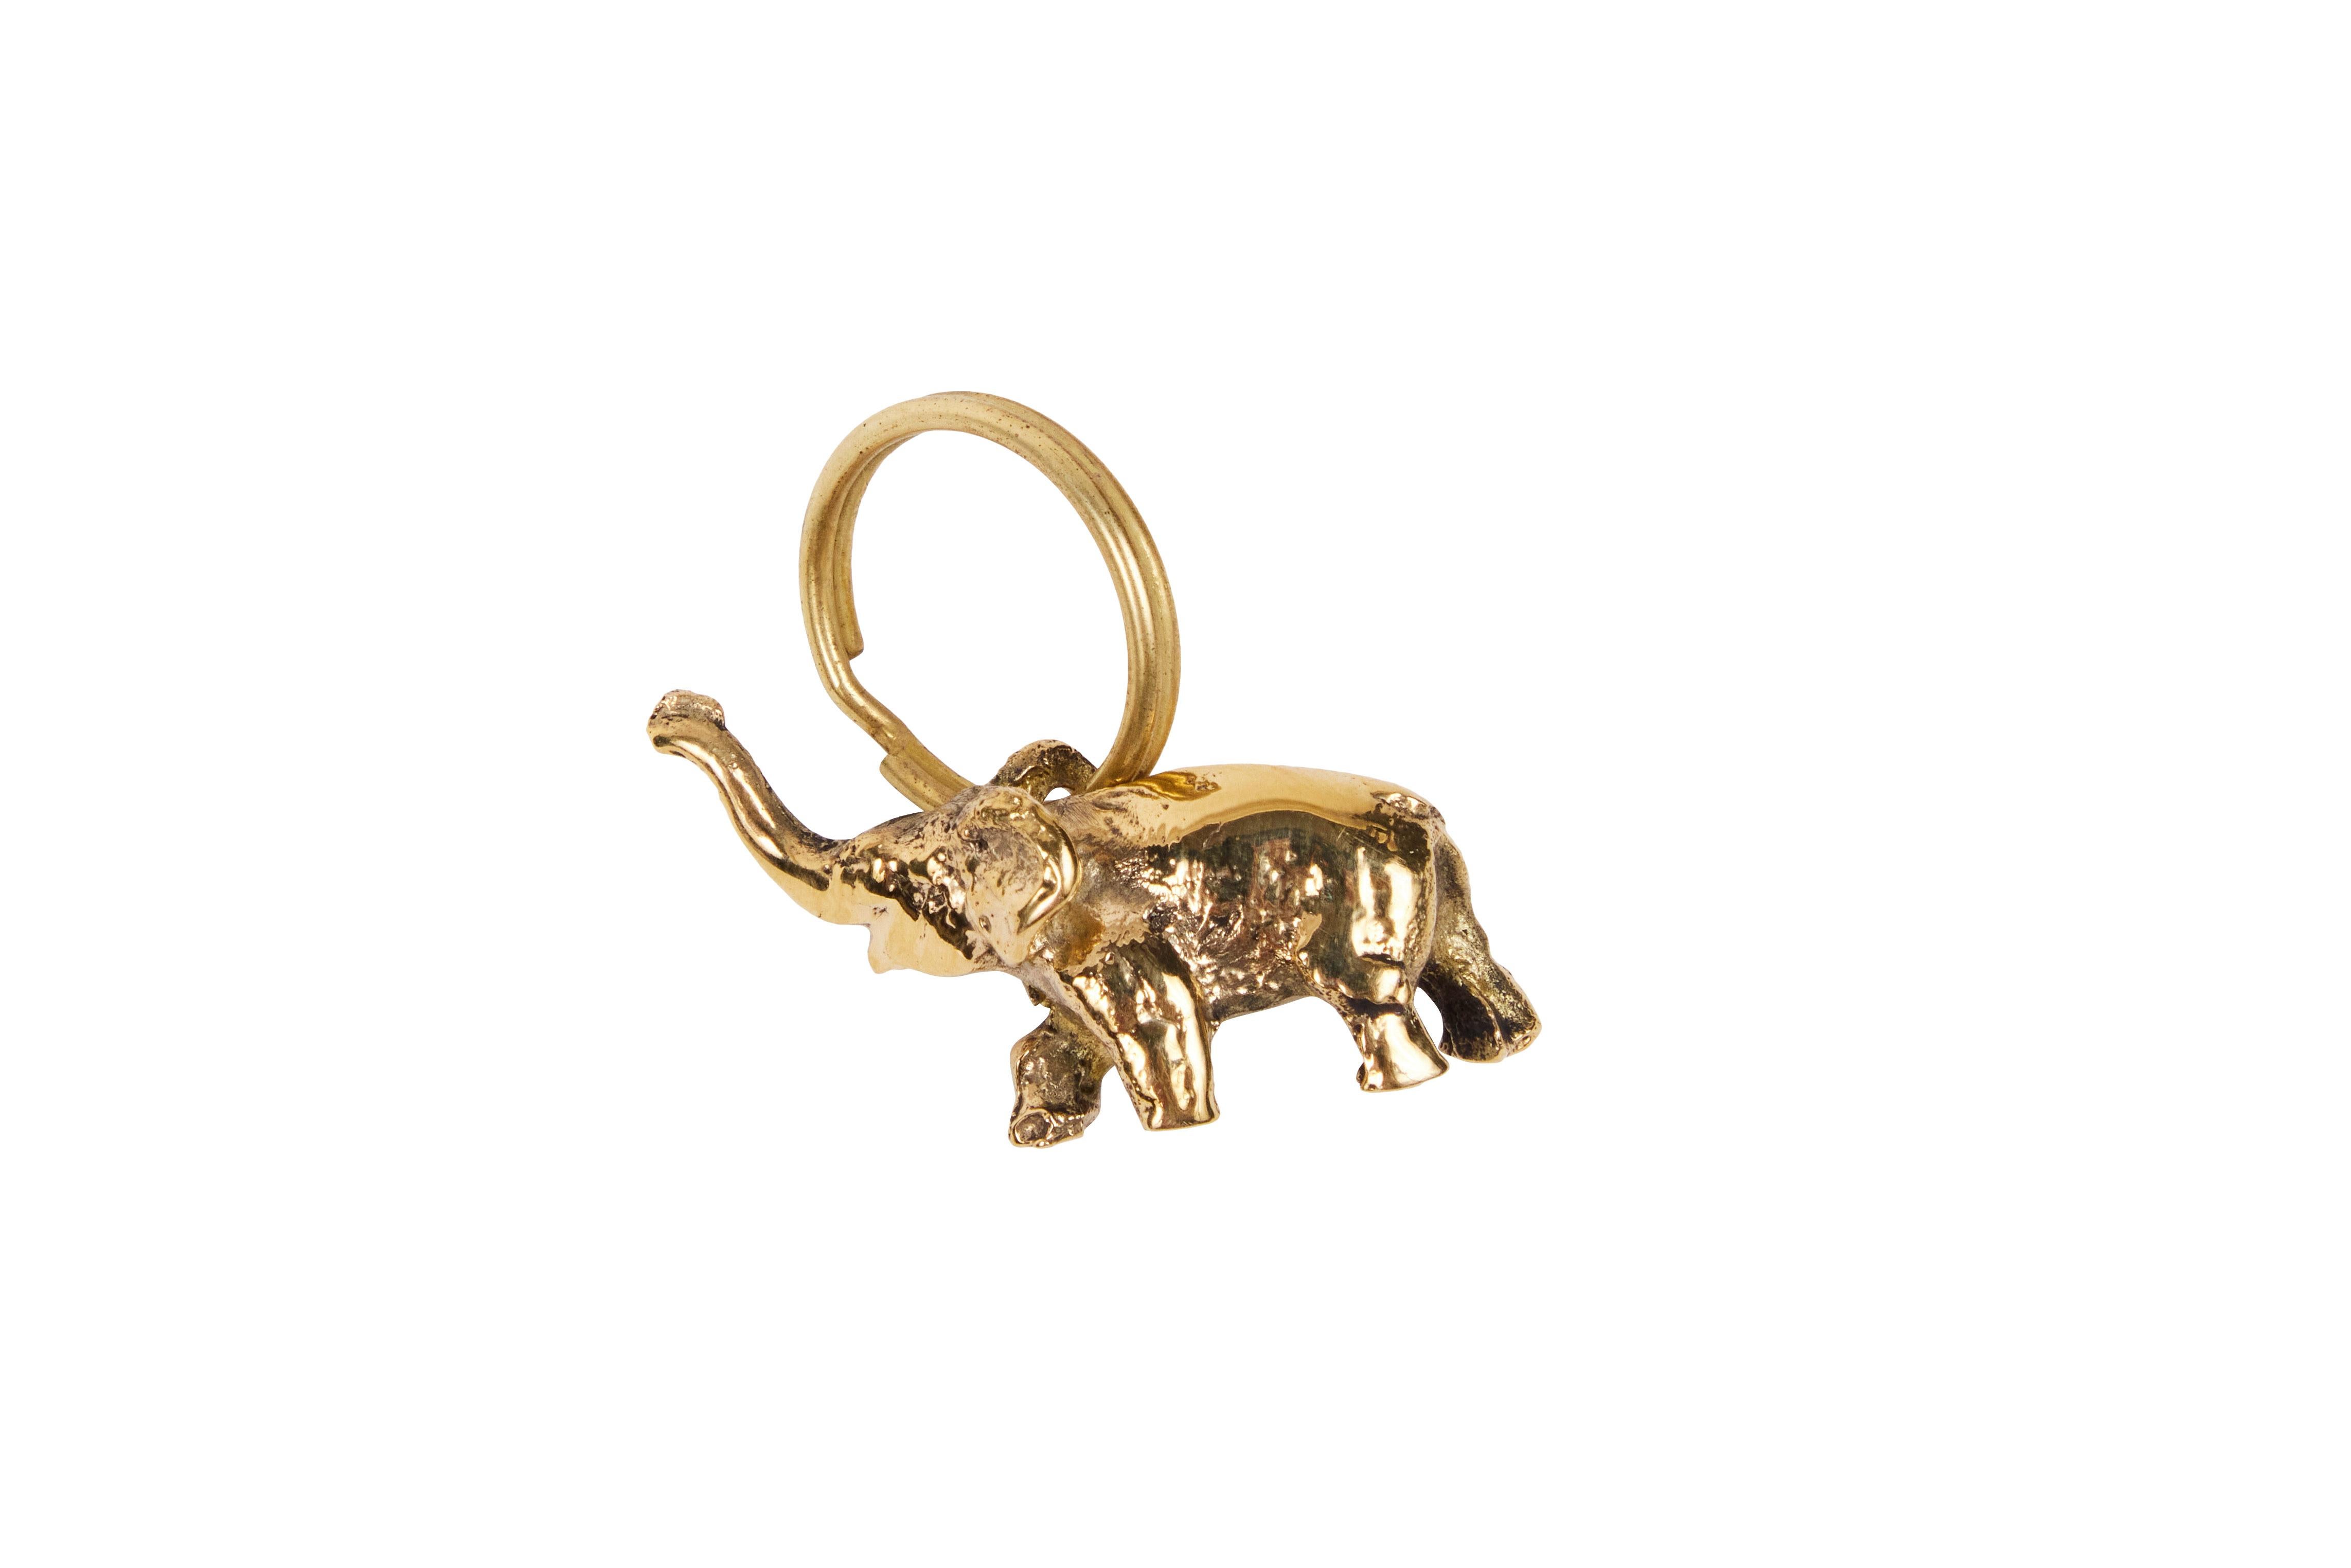 Carl Auböck Modell #5607 'Elefant' Messingfigur Schlüsselanhänger. Dieses in den 1950er Jahren entworfene, unglaublich raffinierte und skulpturale Objekt ist aus poliertem Messing handgefertigt. 

Der Preis gilt pro Stück. Einer auf Lager und bereit